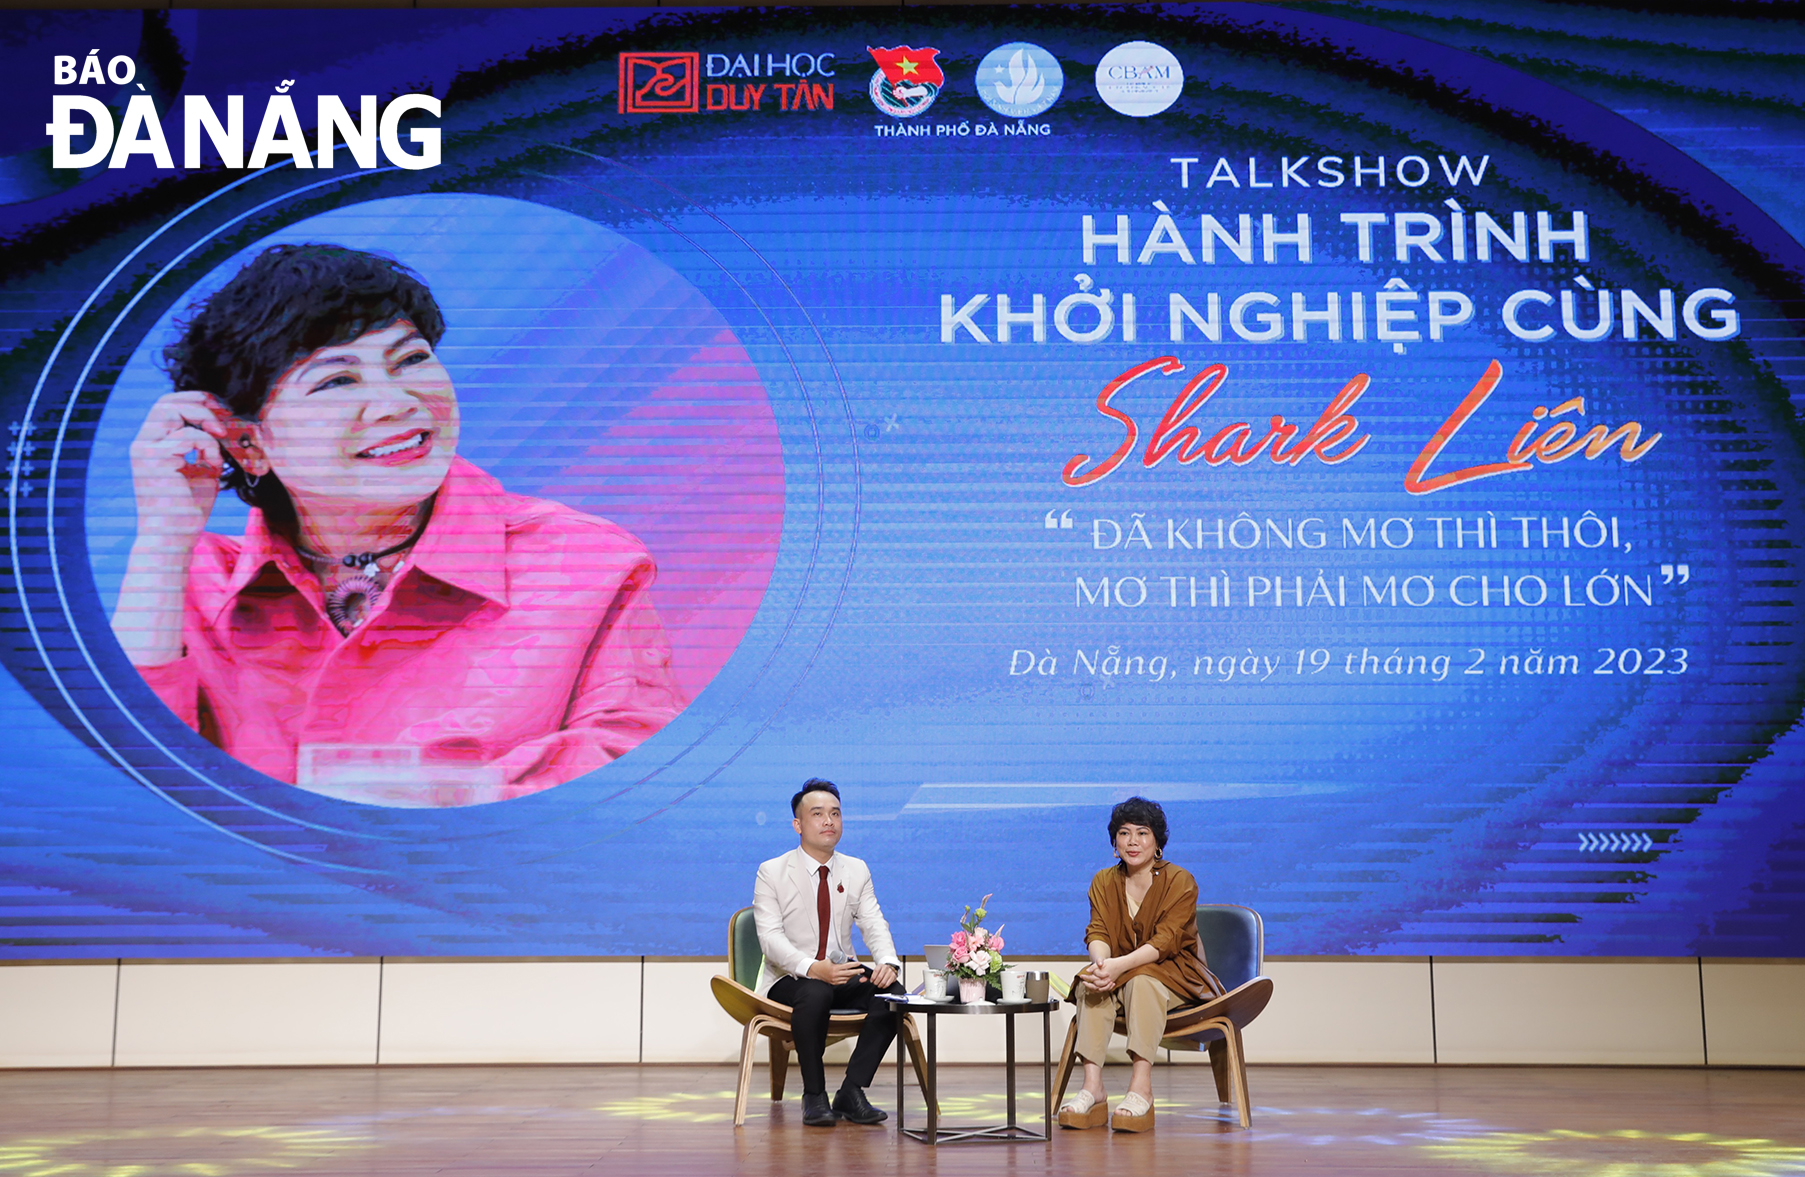 Bà Đỗ Thị Kim Liên (Shark Liên) trong buổi Talkshow “Hành trình khởi nghiệp” tại Trường Đại học Duy Tân. Ảnh: T.V